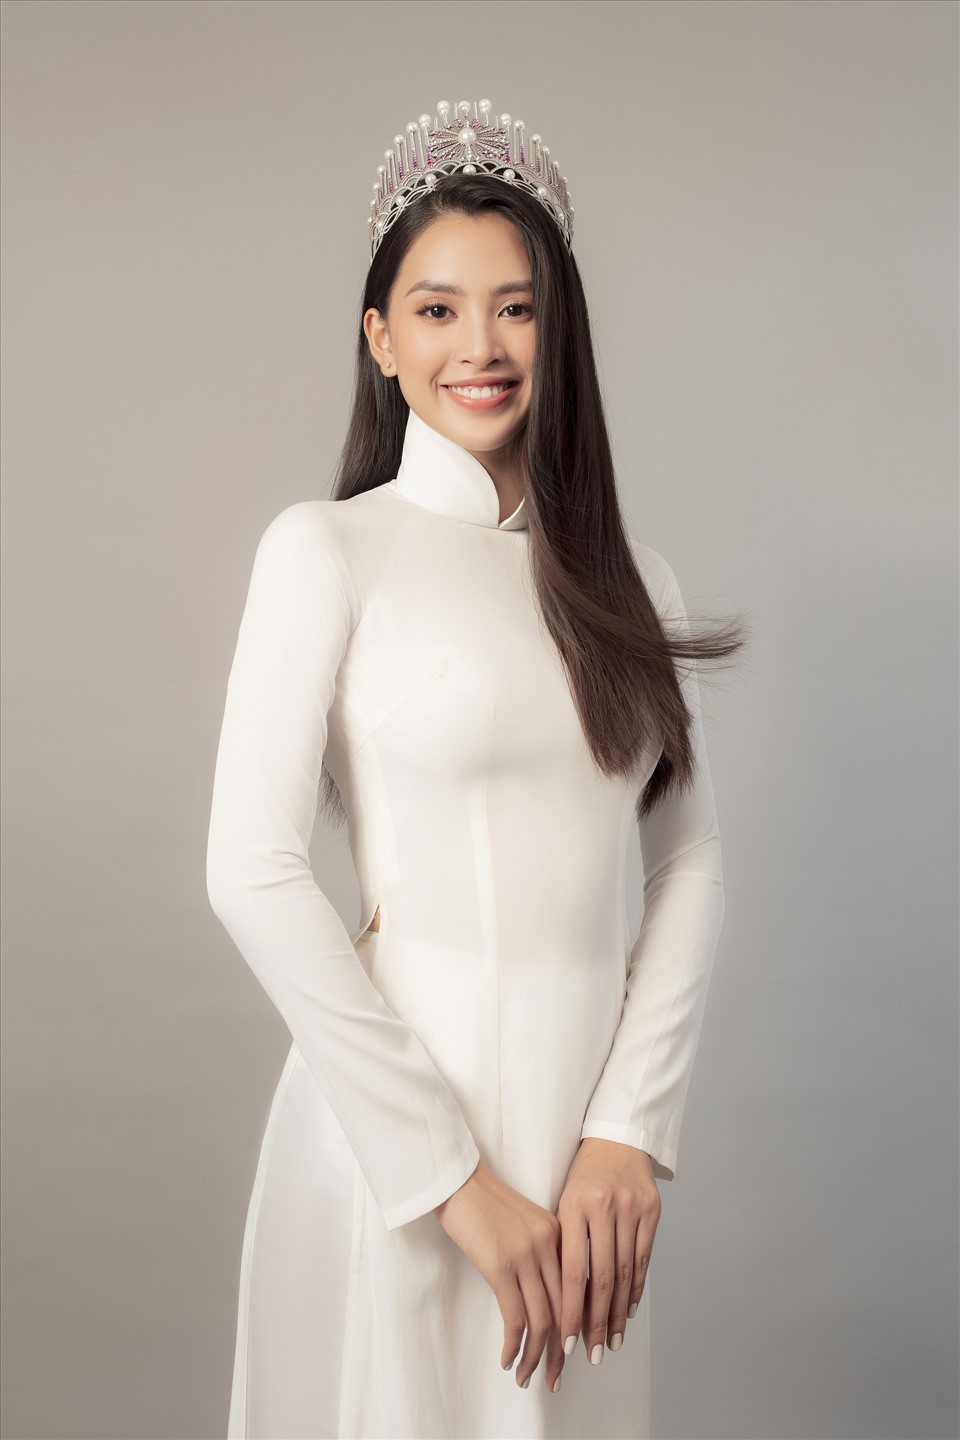 Sắp tới, cô sẽ cùng Hoa hậu Việt Nam 2016 Đỗ Mỹ Linh, Miss World Vietnam Lương Thuỳ Linh tới miền Trung để ủng hộ và giúp đỡ bà con vùng lũ lụt. Ảnh: Tang Tang.